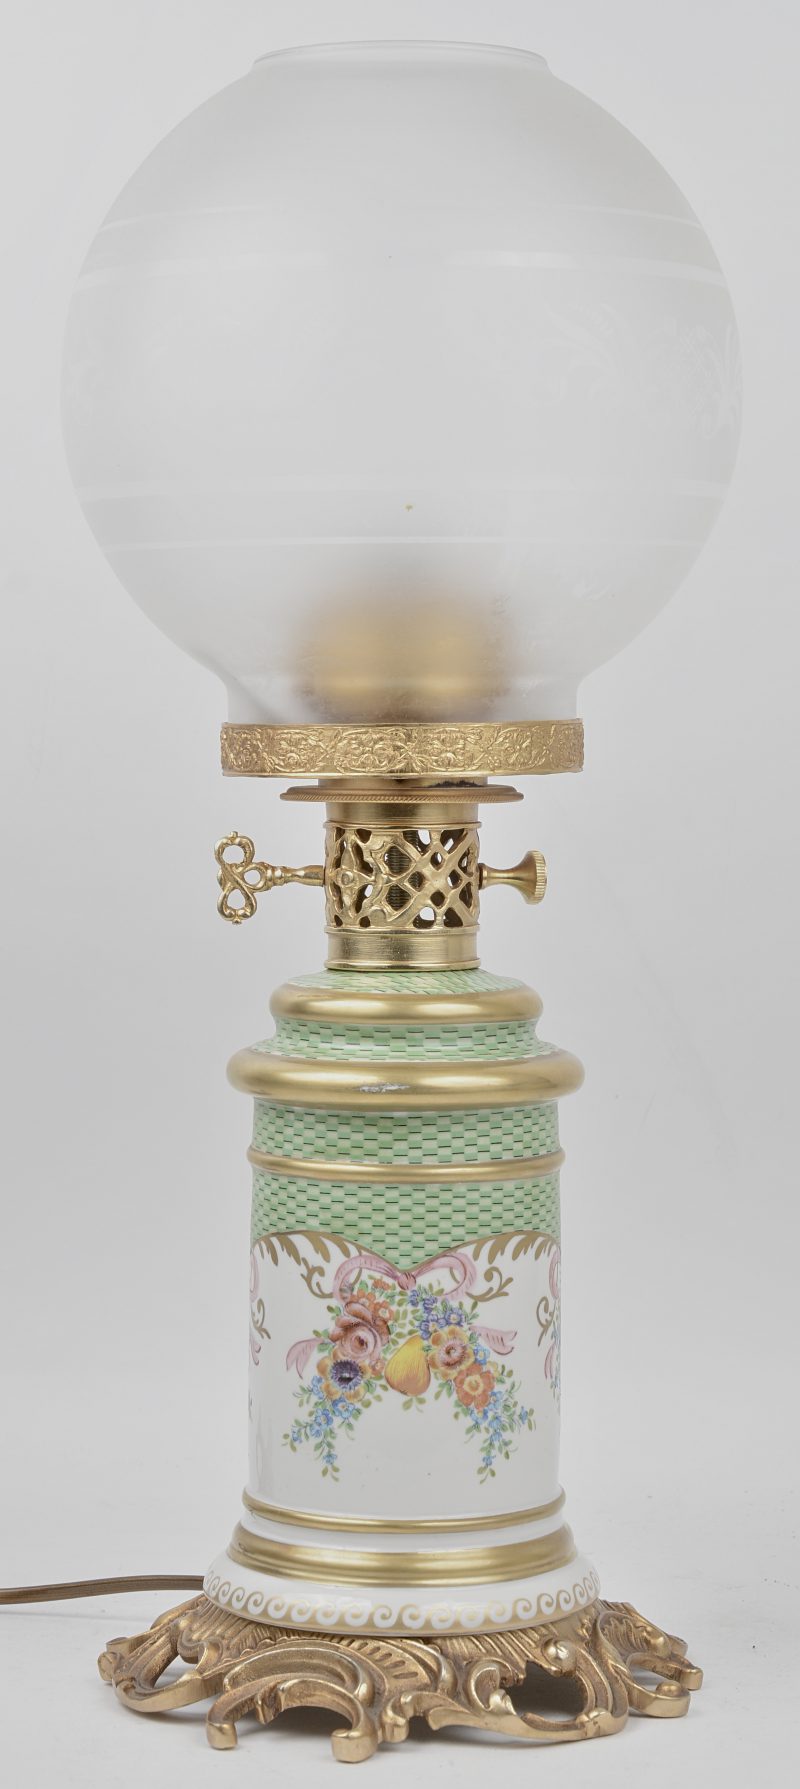 Porceleinen lampvoet met glazen bolle kap. Versiert met bloemen en groen patroon. Met messingen details. Gemerkt.